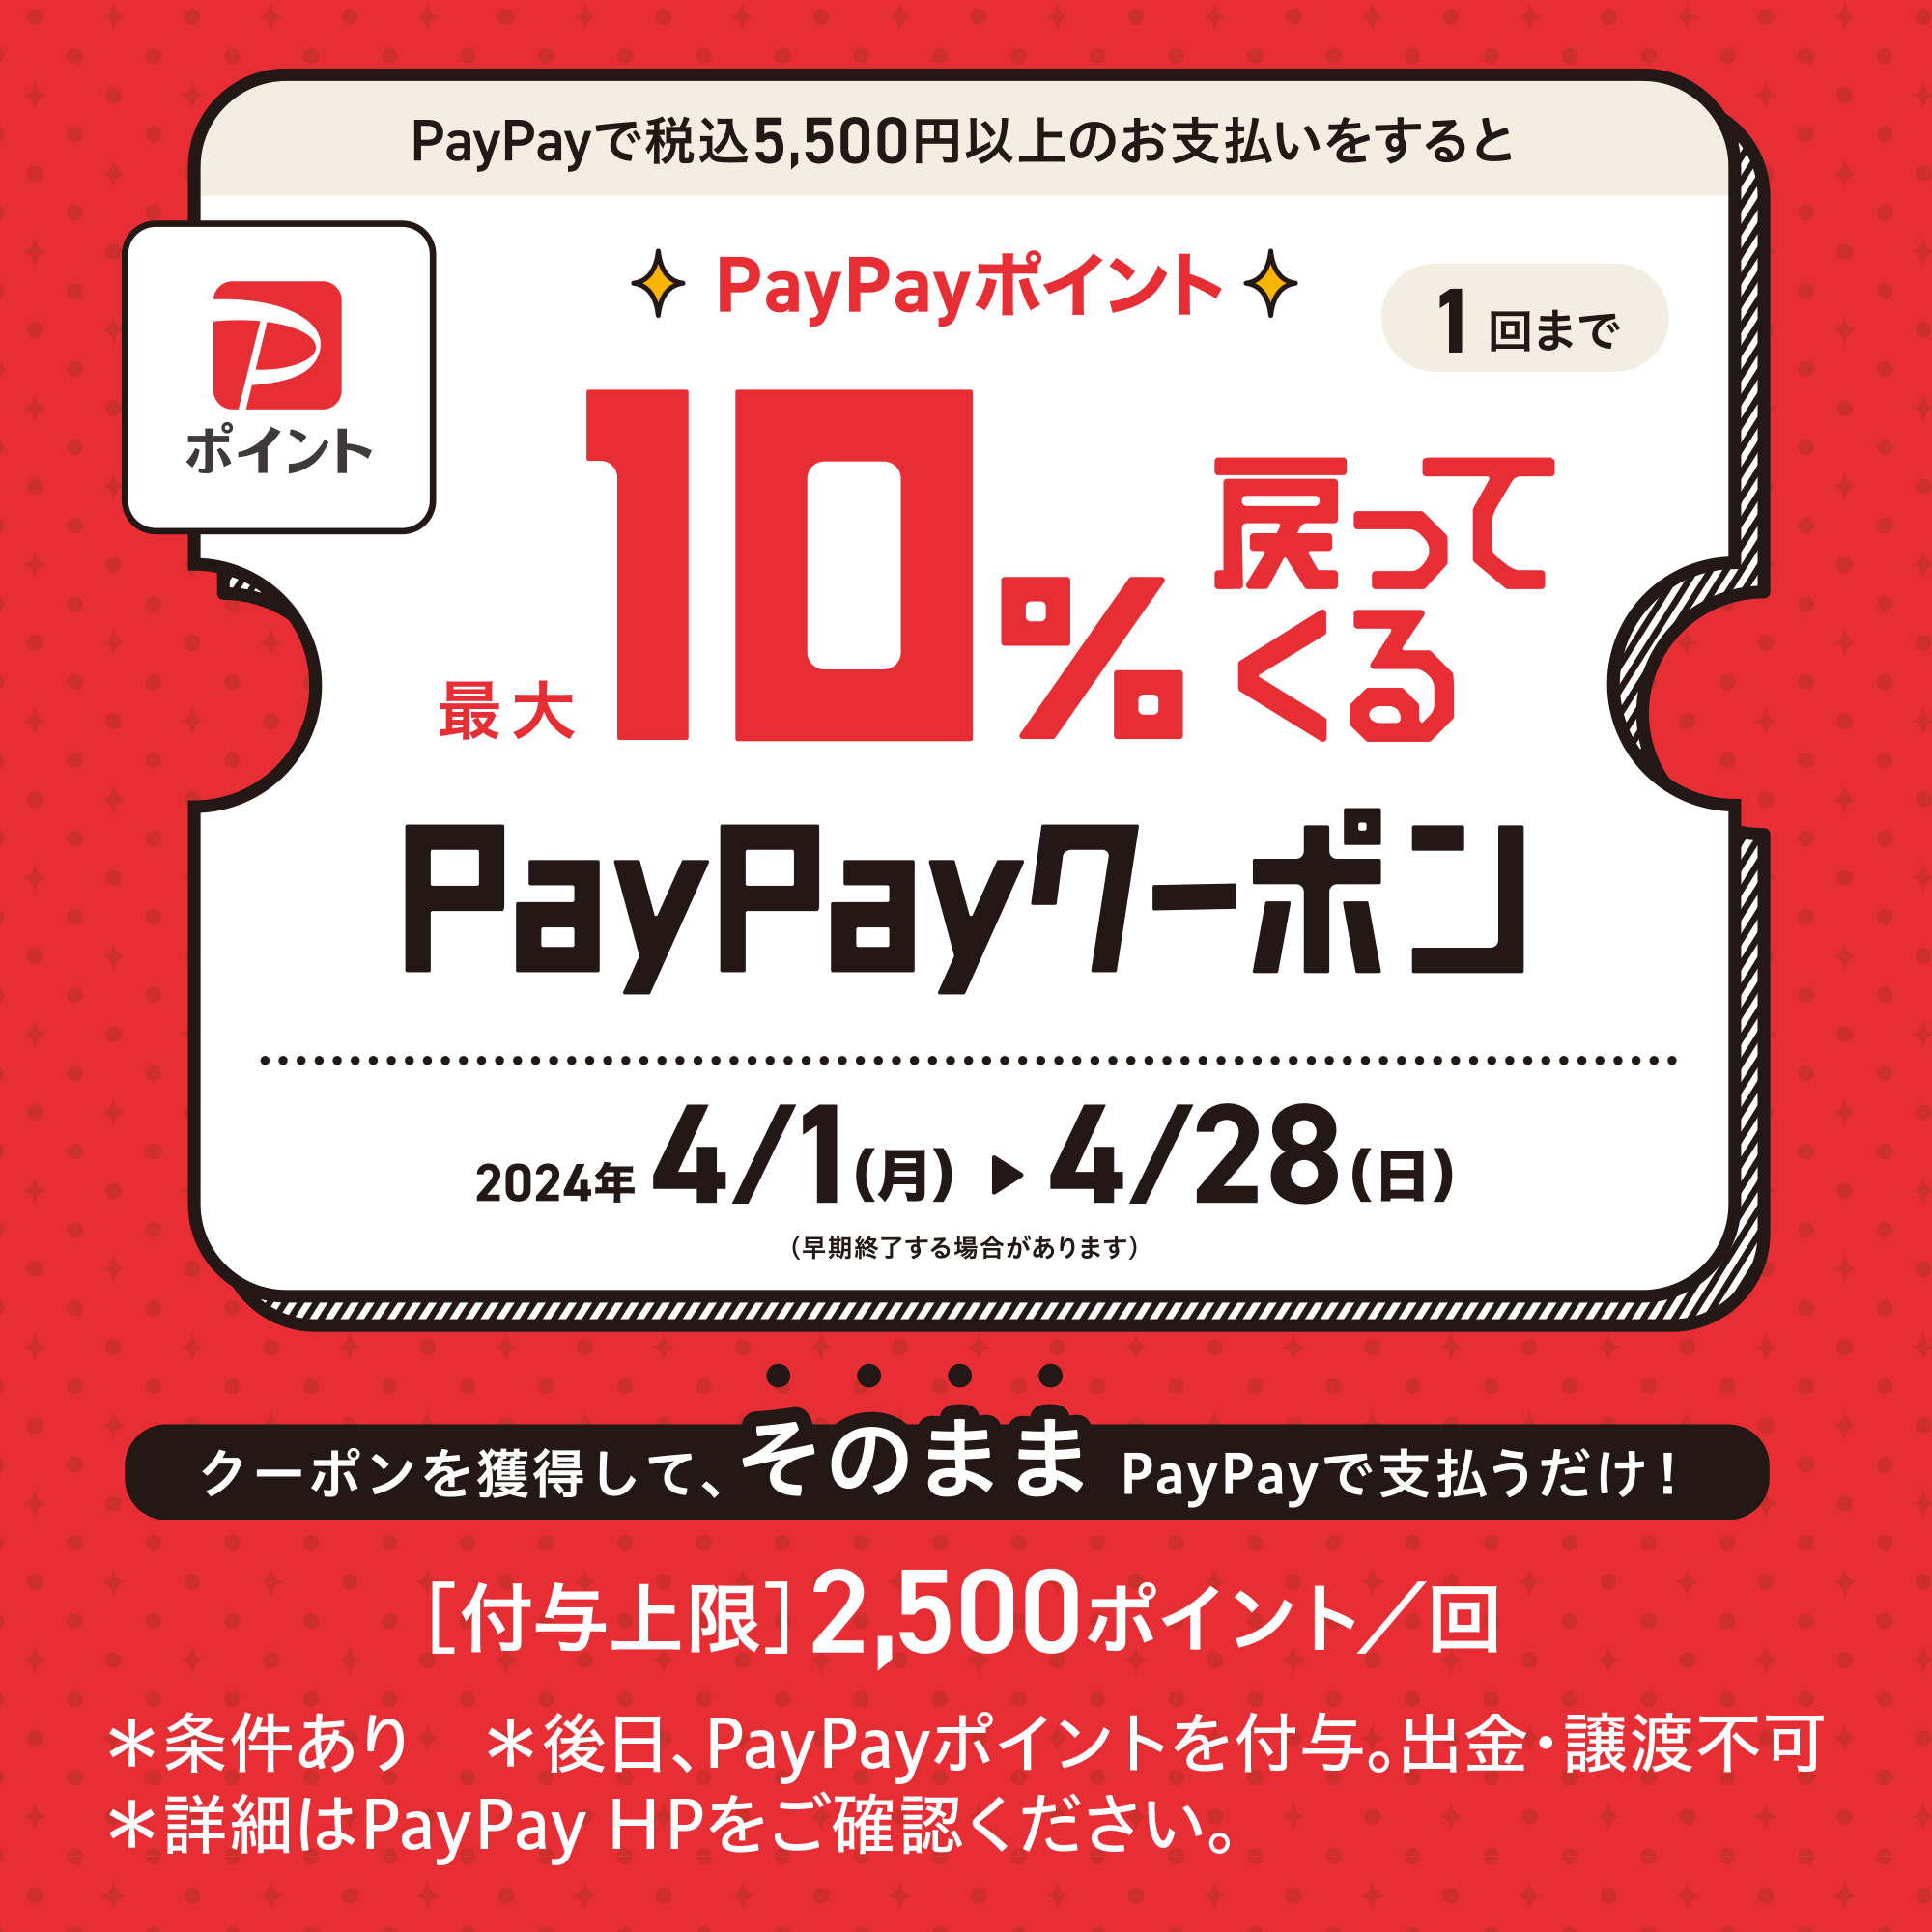 PayPayキャンペーン:イメージ